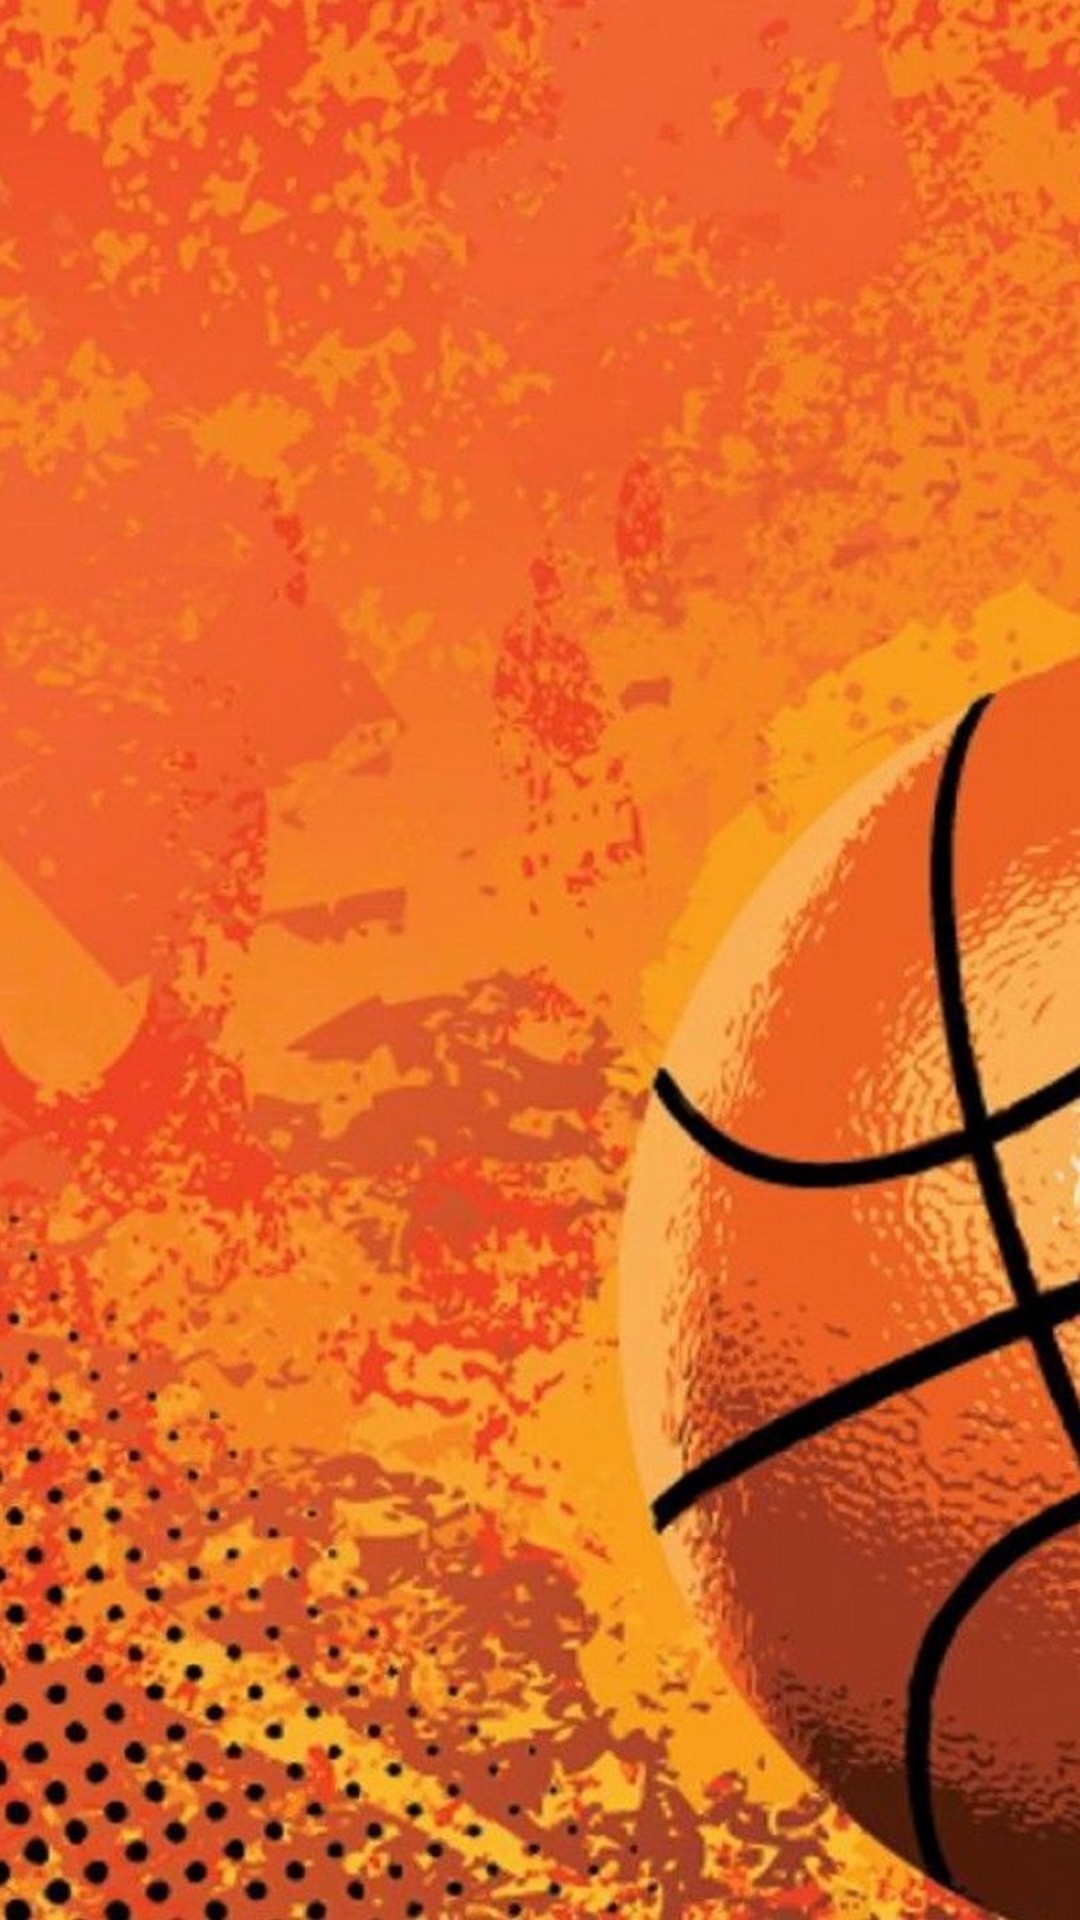 Basketball Wallpapers 1